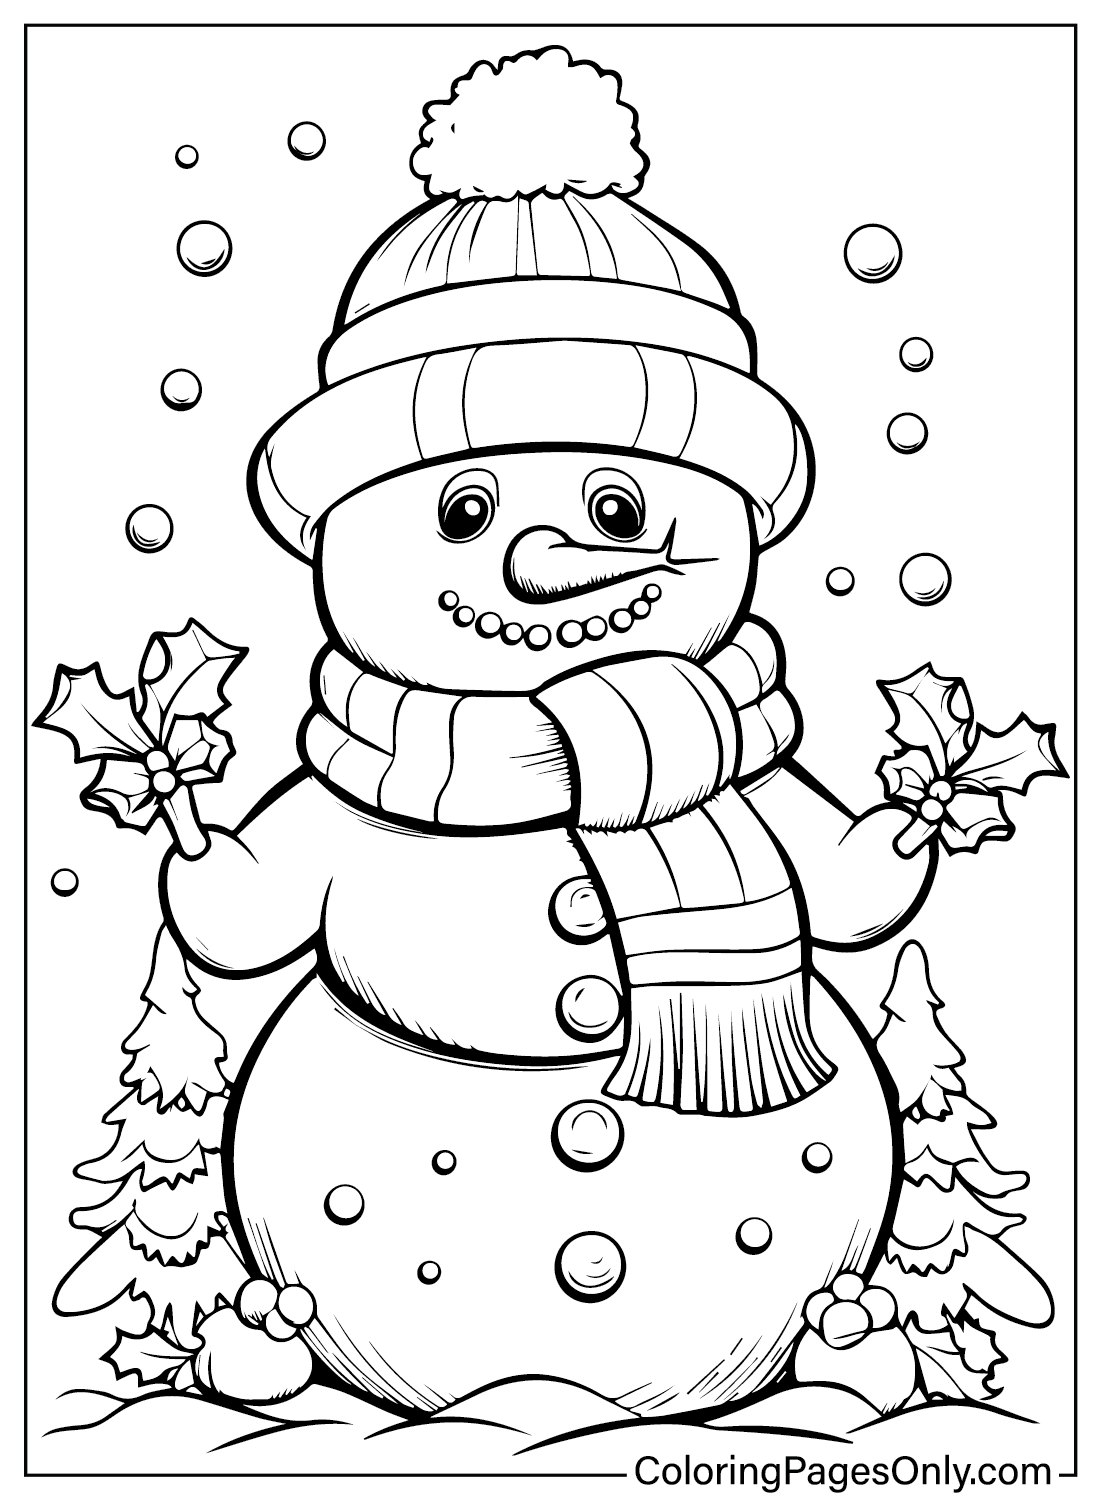 Dibujo para colorear gratis de muñeco de nieve de diciembre